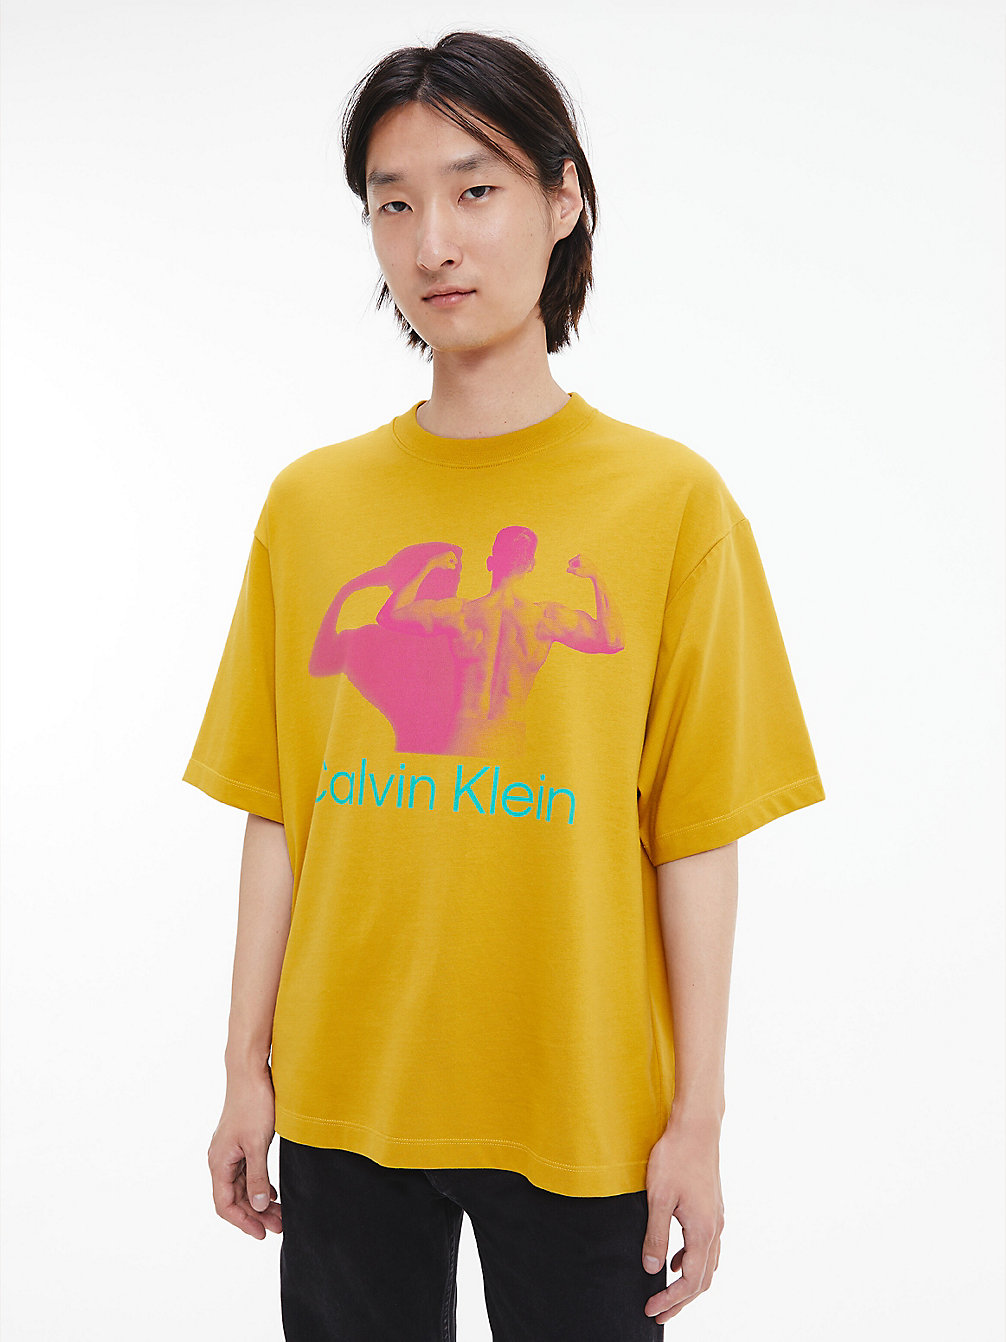 HONEY Unisex Printed T-Shirt - CK Standards undefined unisex Calvin Klein